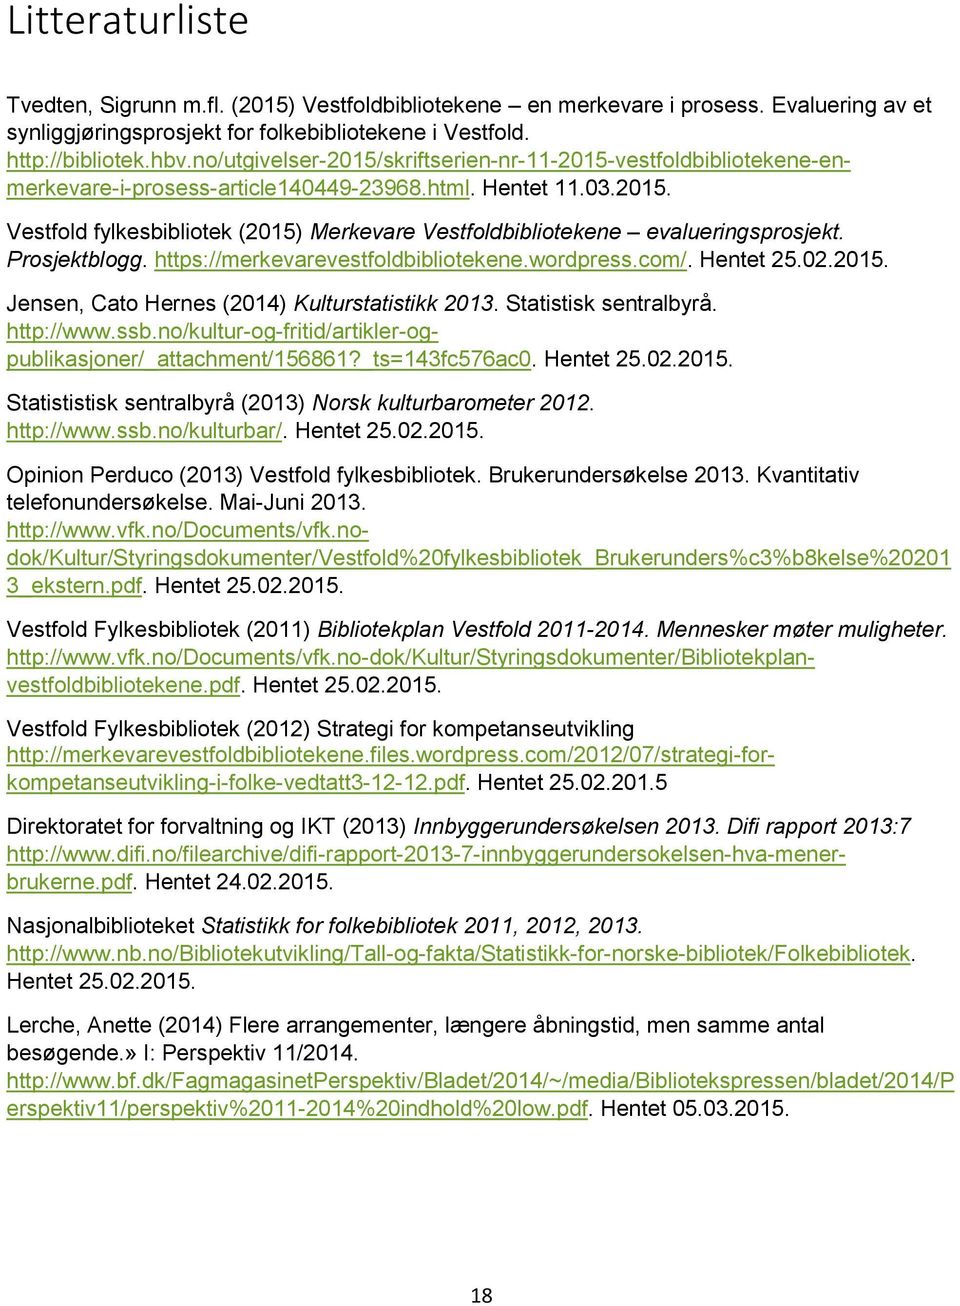 Prosjektblogg. https://merkevarevestfoldbibliotekene.wordpress.com/. Hentet 25.02.2015. Jensen, Cato Hernes (2014) Kulturstatistikk 2013. Statistisk sentralbyrå. http://www.ssb.